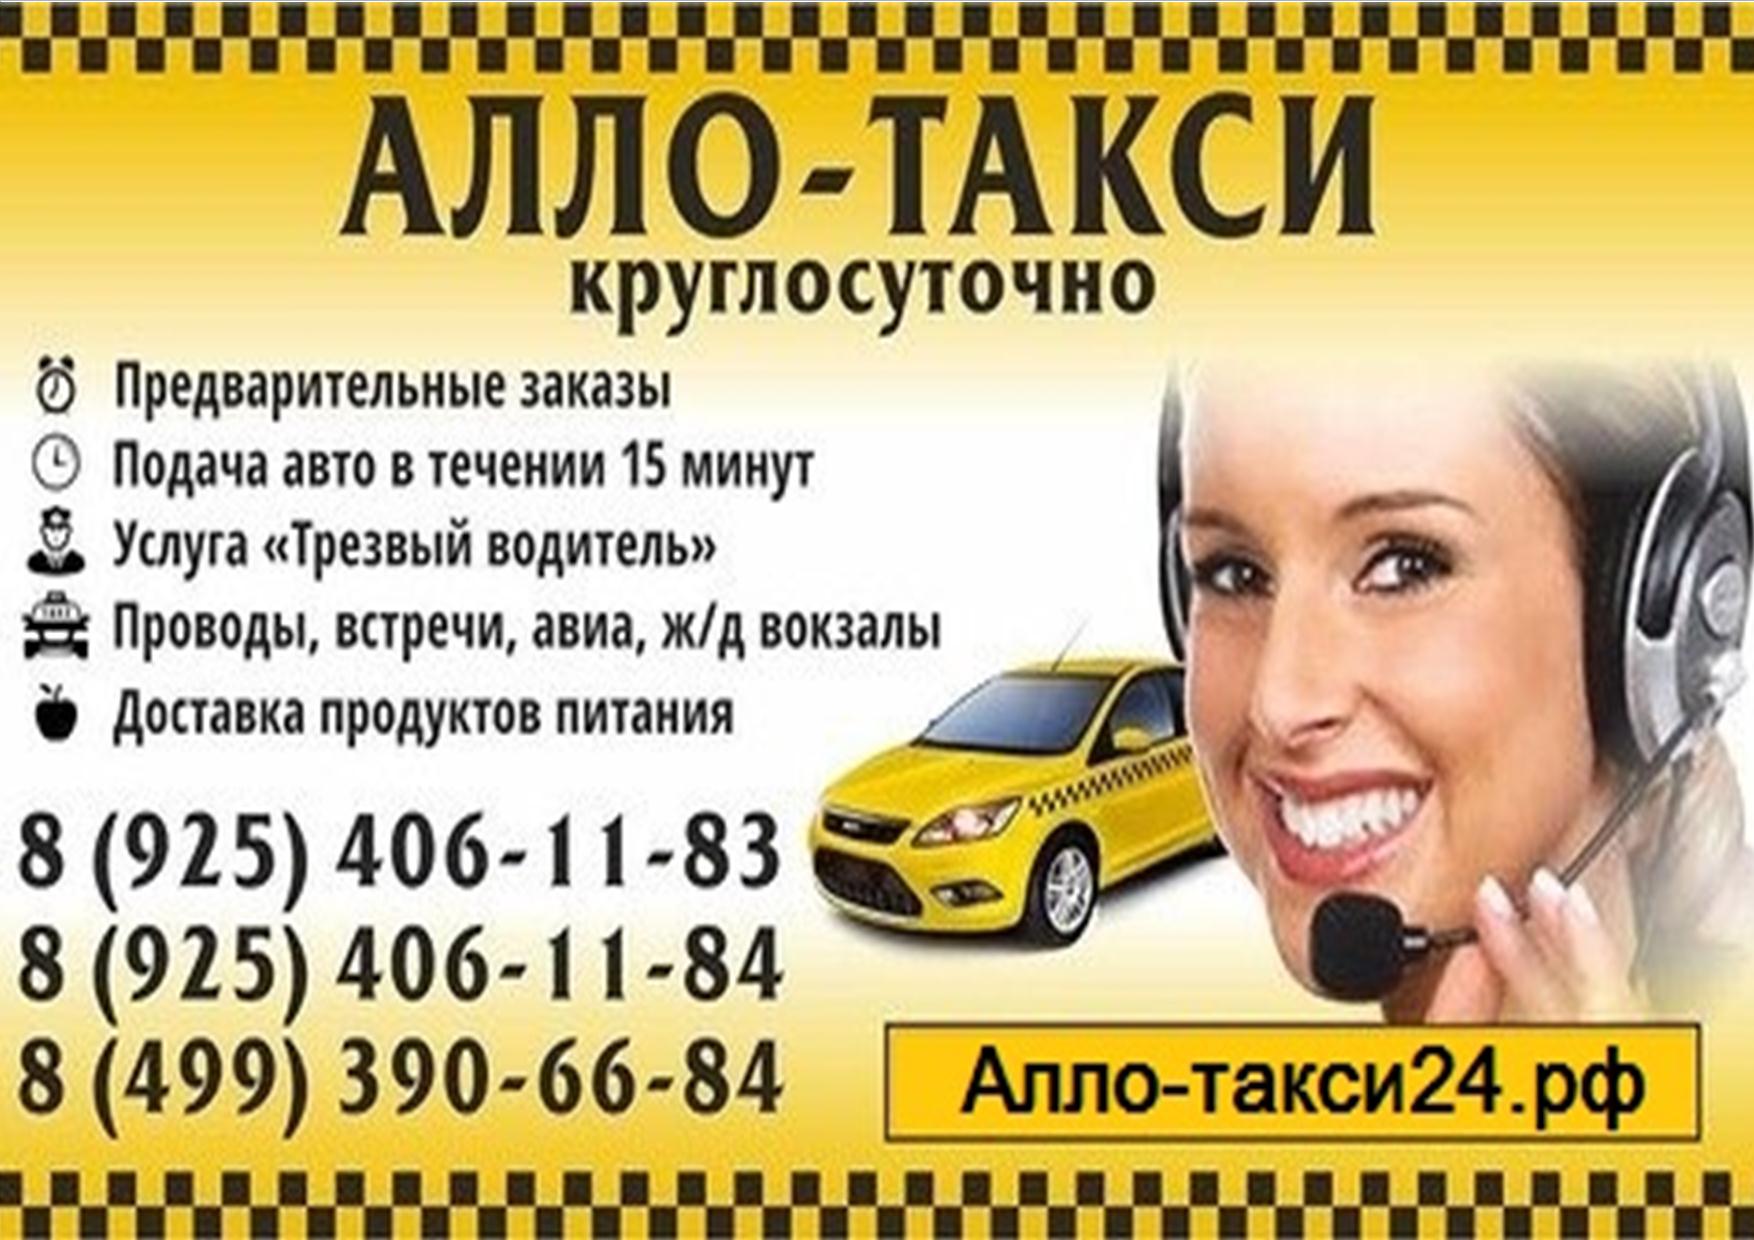 Вызвать такси екатеринбург телефон. Реклама такси. Объявление такси. Визитка такси. Таксист реклама.